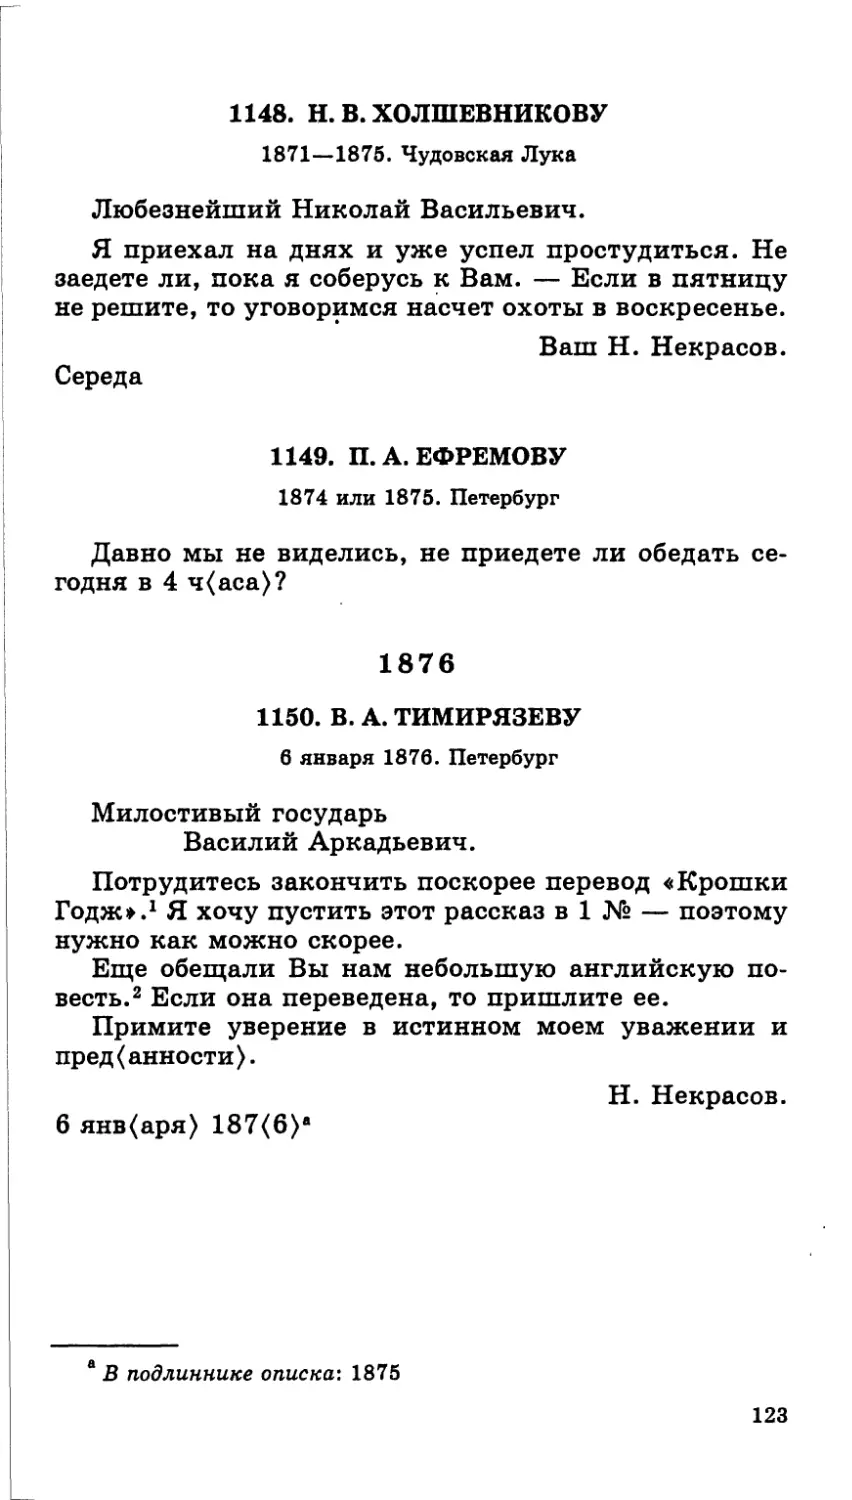 1148.Н. В. Холшевникову. 1871—1875
1149.П. А. Ефремову. 1874 или 1875
1876